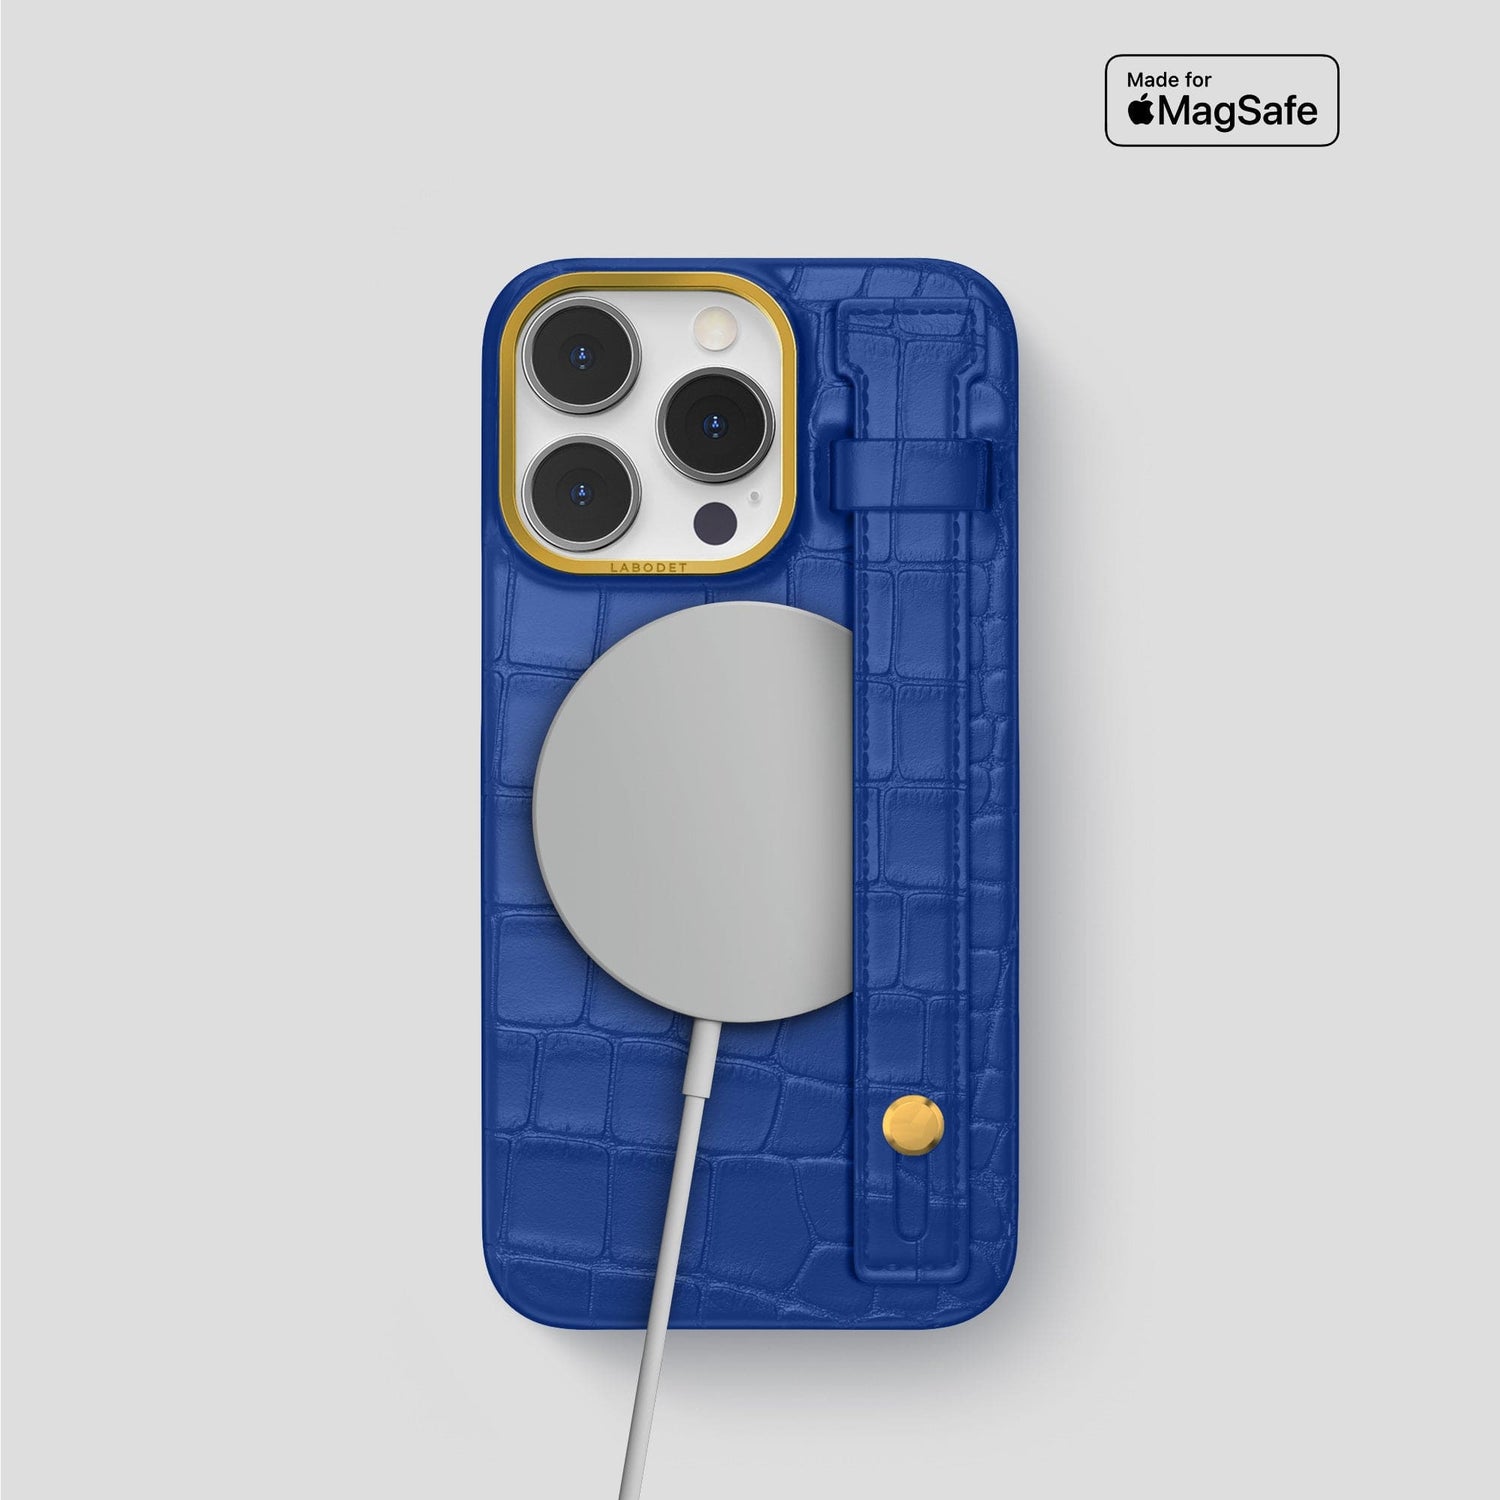 HERMES PARIS PATTERN LOGO iPhone 14 Pro Case Cover